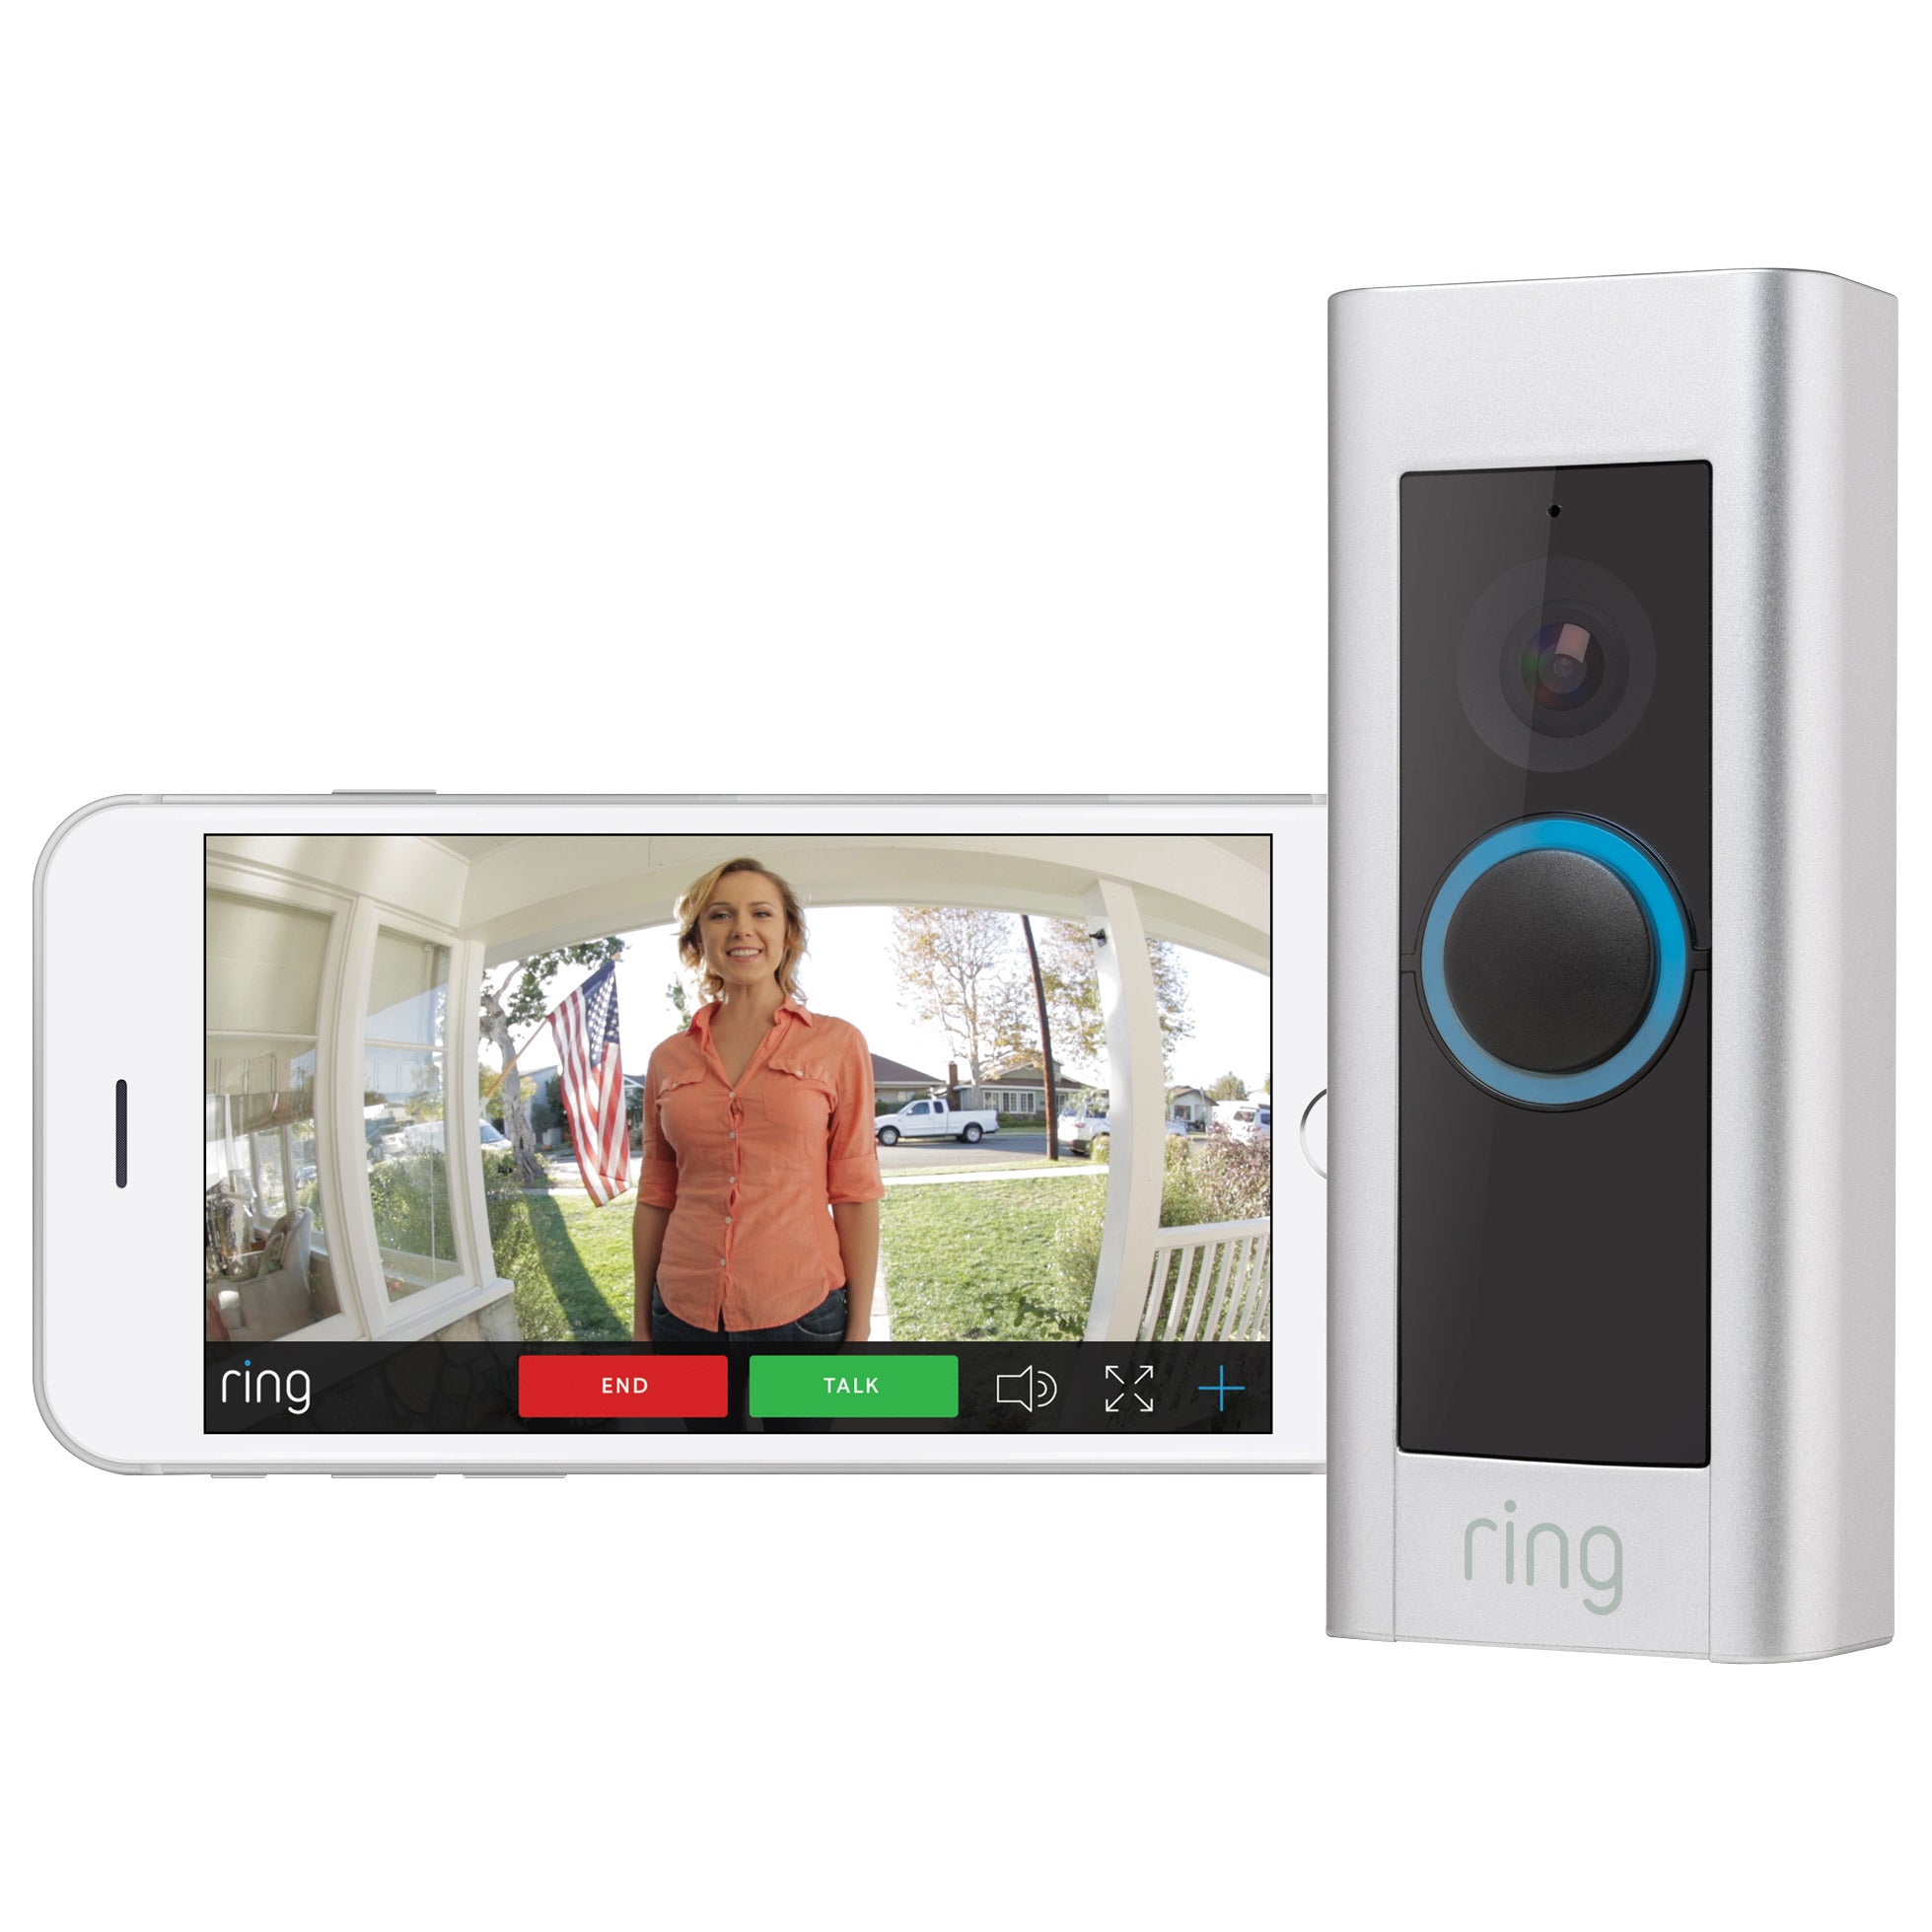 RING PRO Video Doorbell